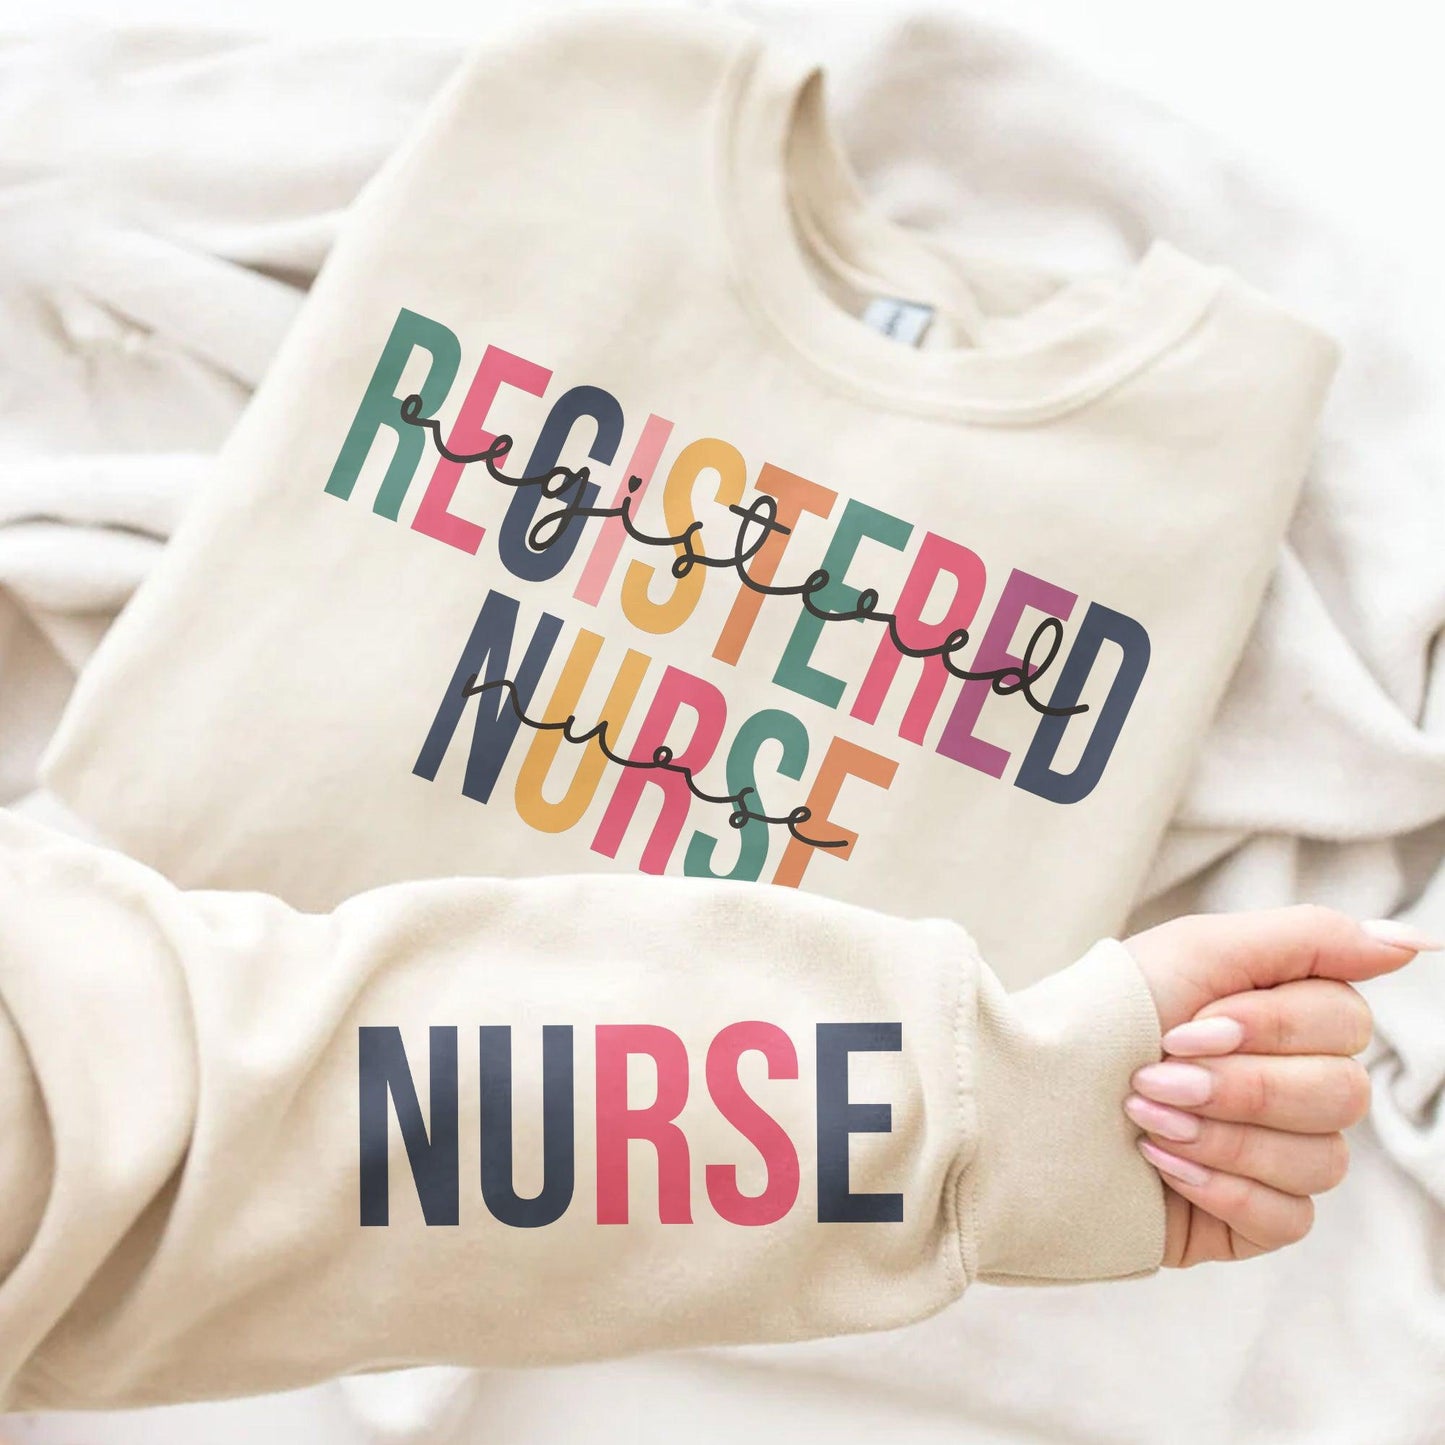 Examinierte Krankenschwester Sweatshirt - Geschenke für Krankenschwestern - GiftHaus